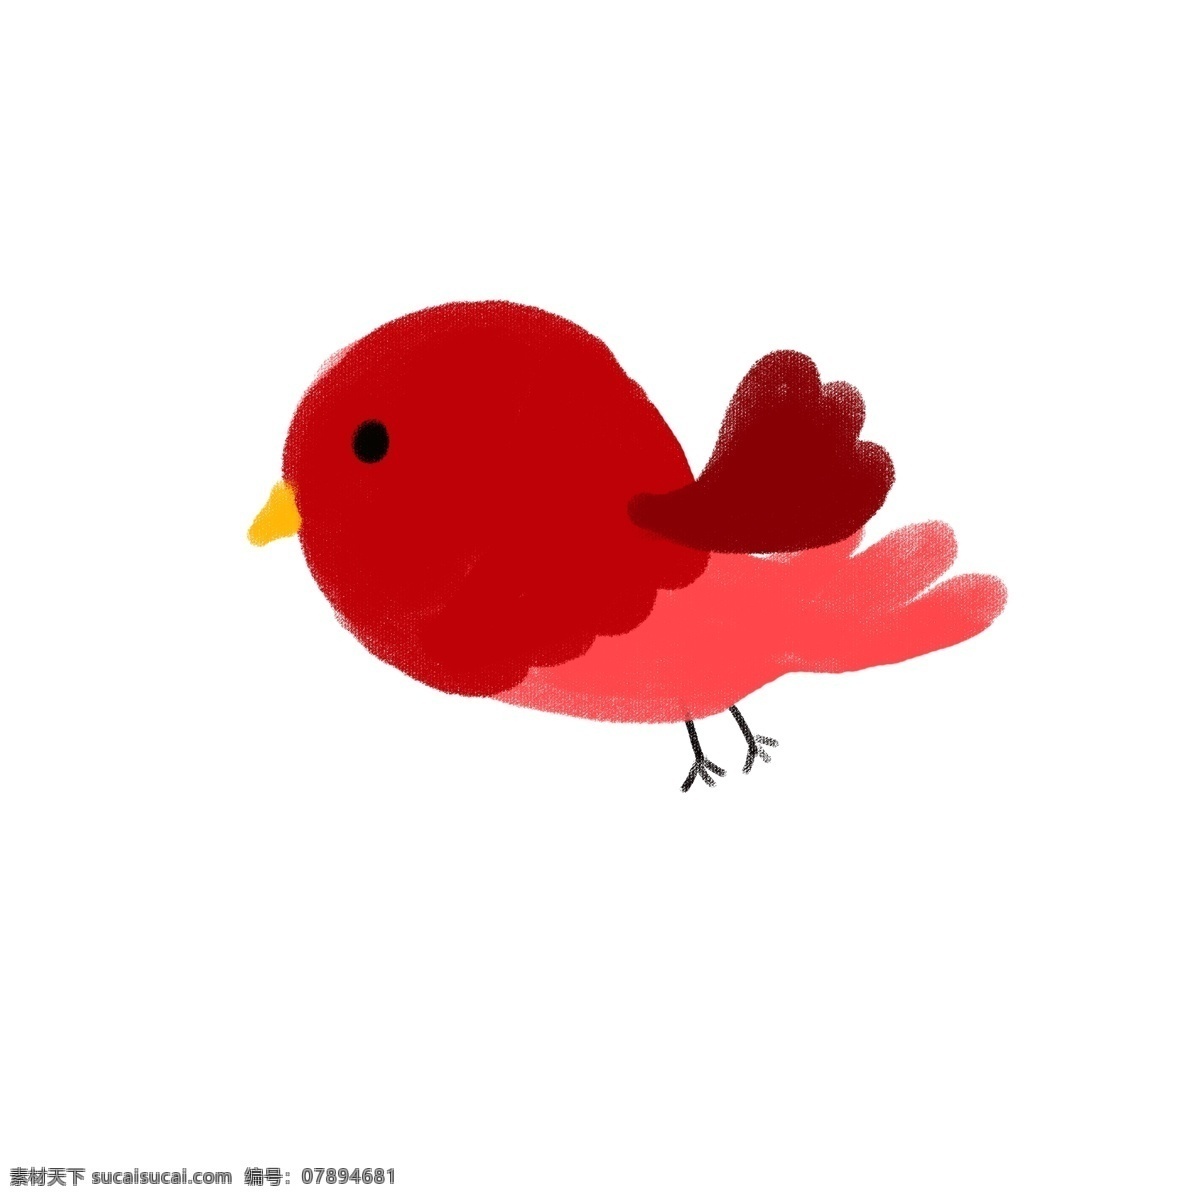 可爱 卡通 小鸟 免 抠 卡通的小鸟 可爱的小鸟 红色 粉色 简约的图形 简笔的小鸟 简单的小鸟